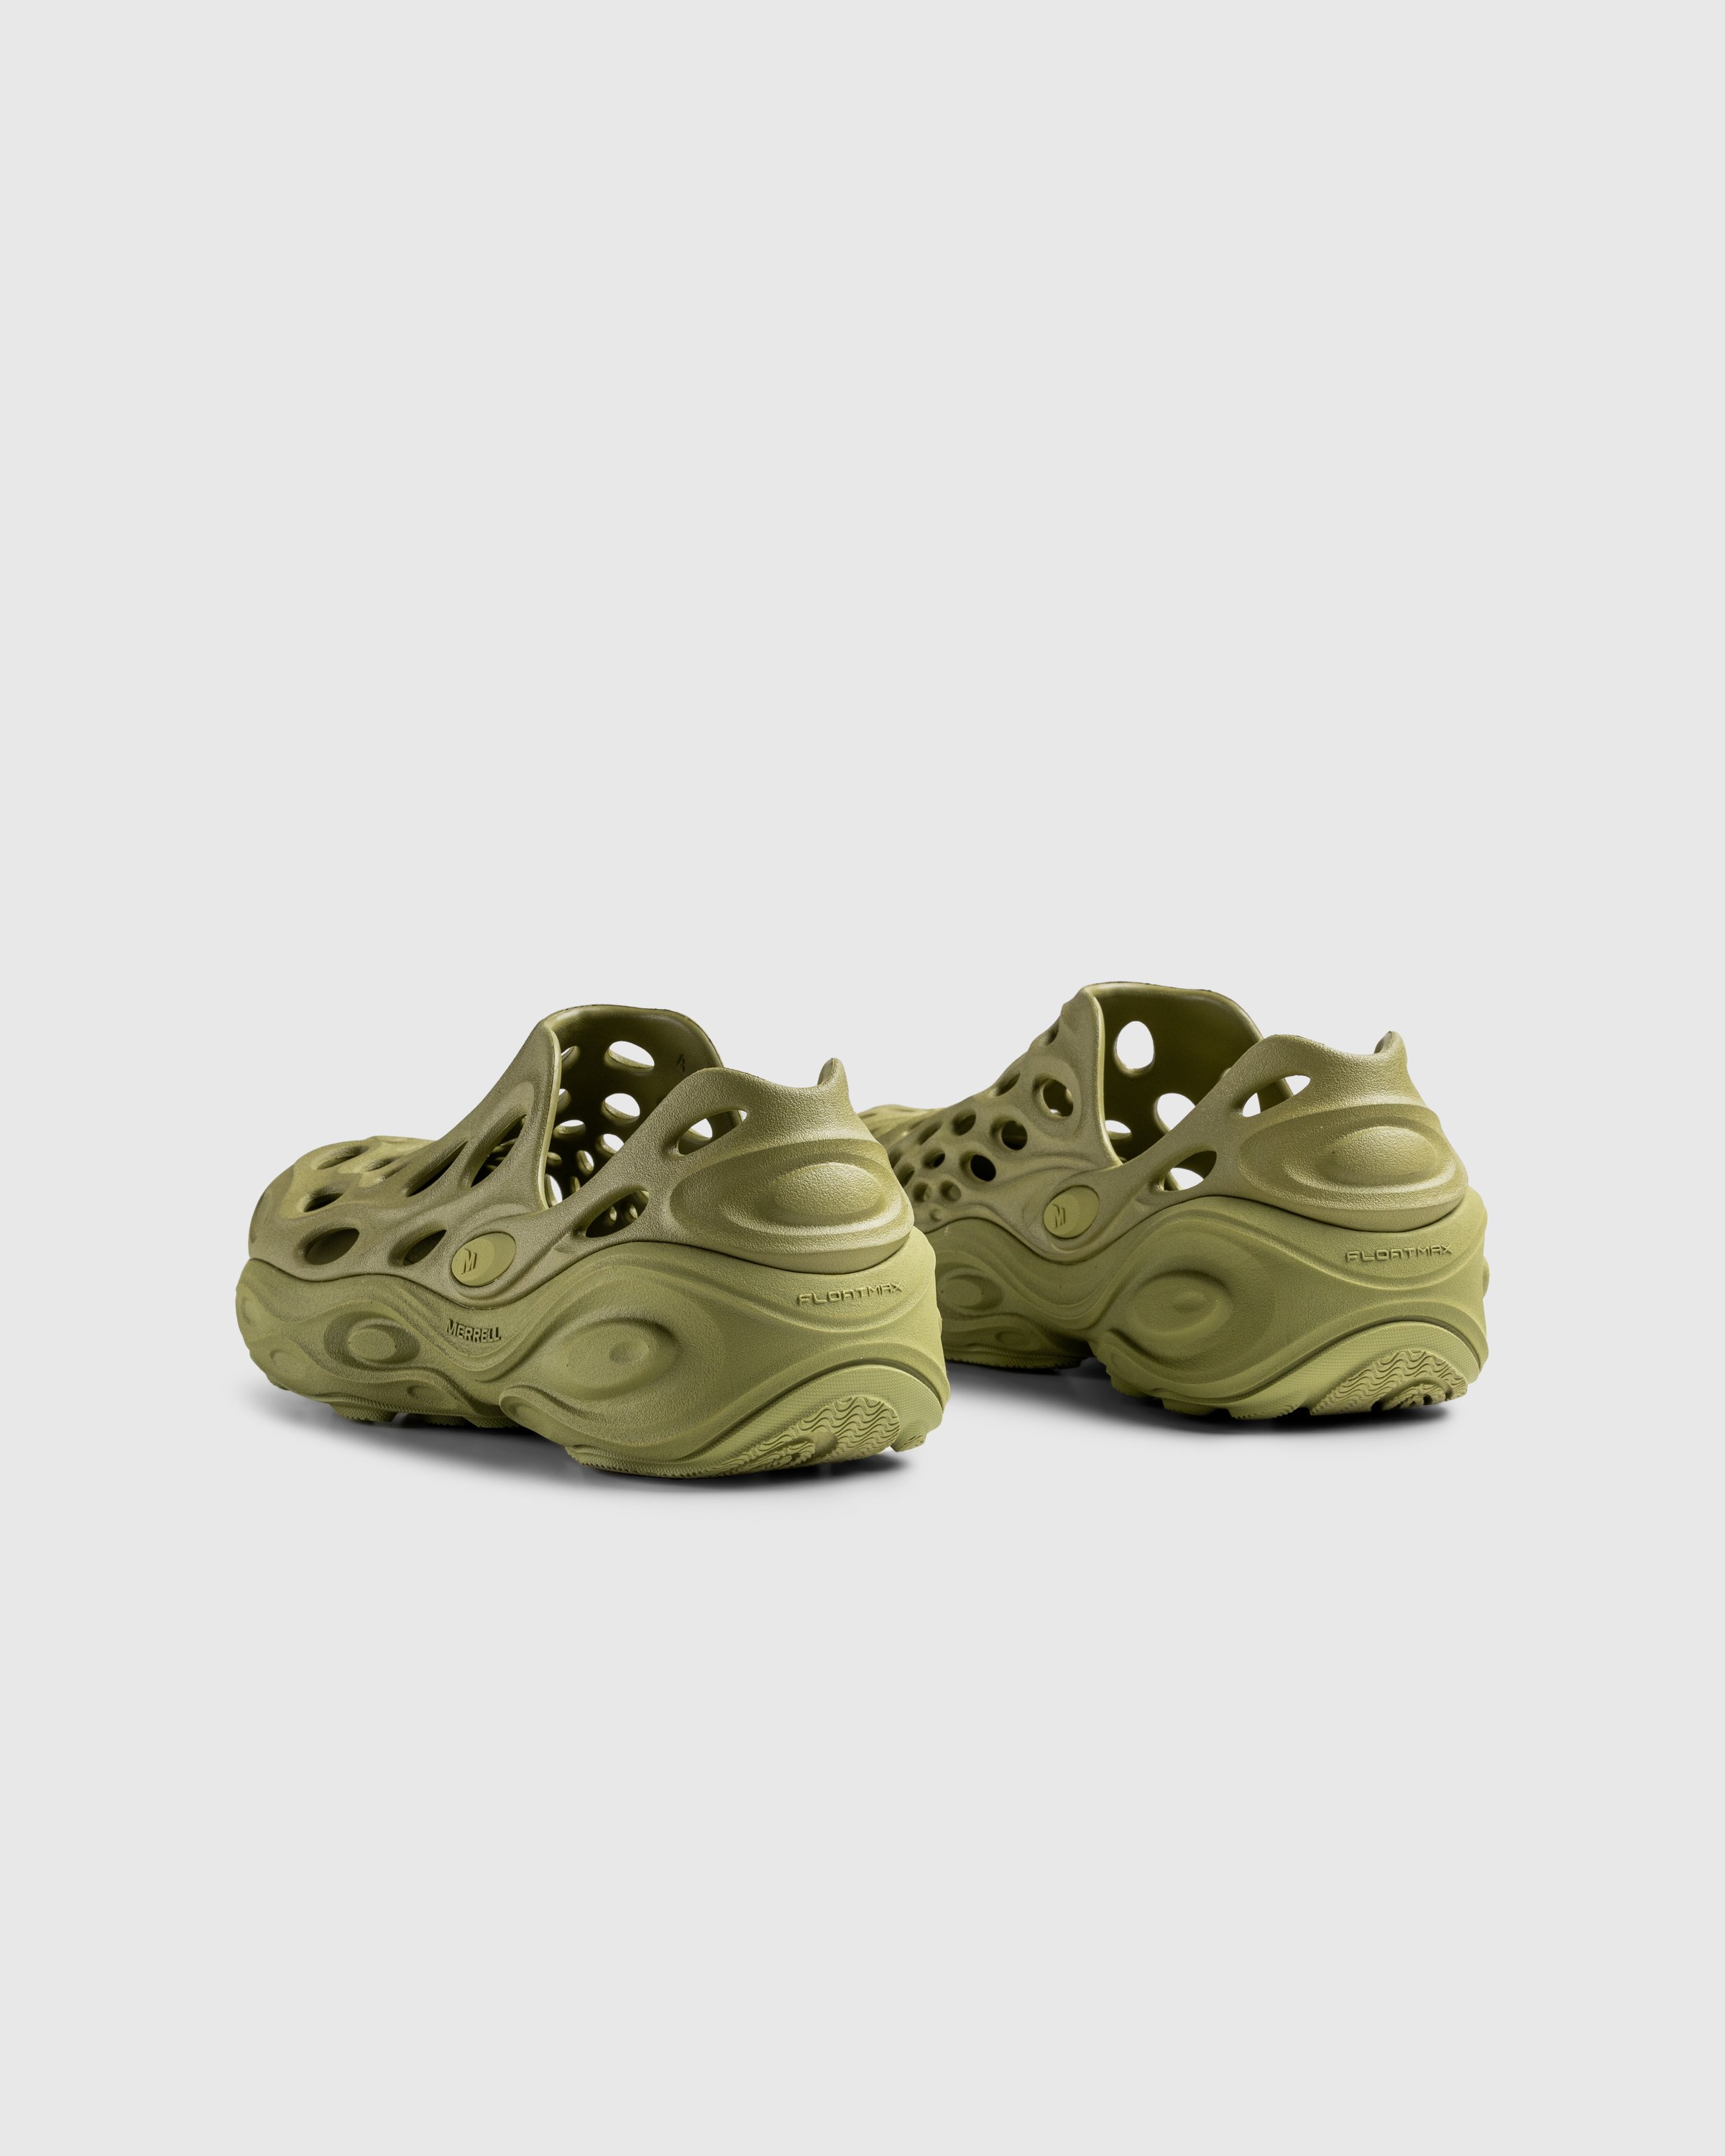 Merrell - HYDRO NEXT GEN MOC SE/TRIPLE MOSSTONE - Footwear - Green - Image 4